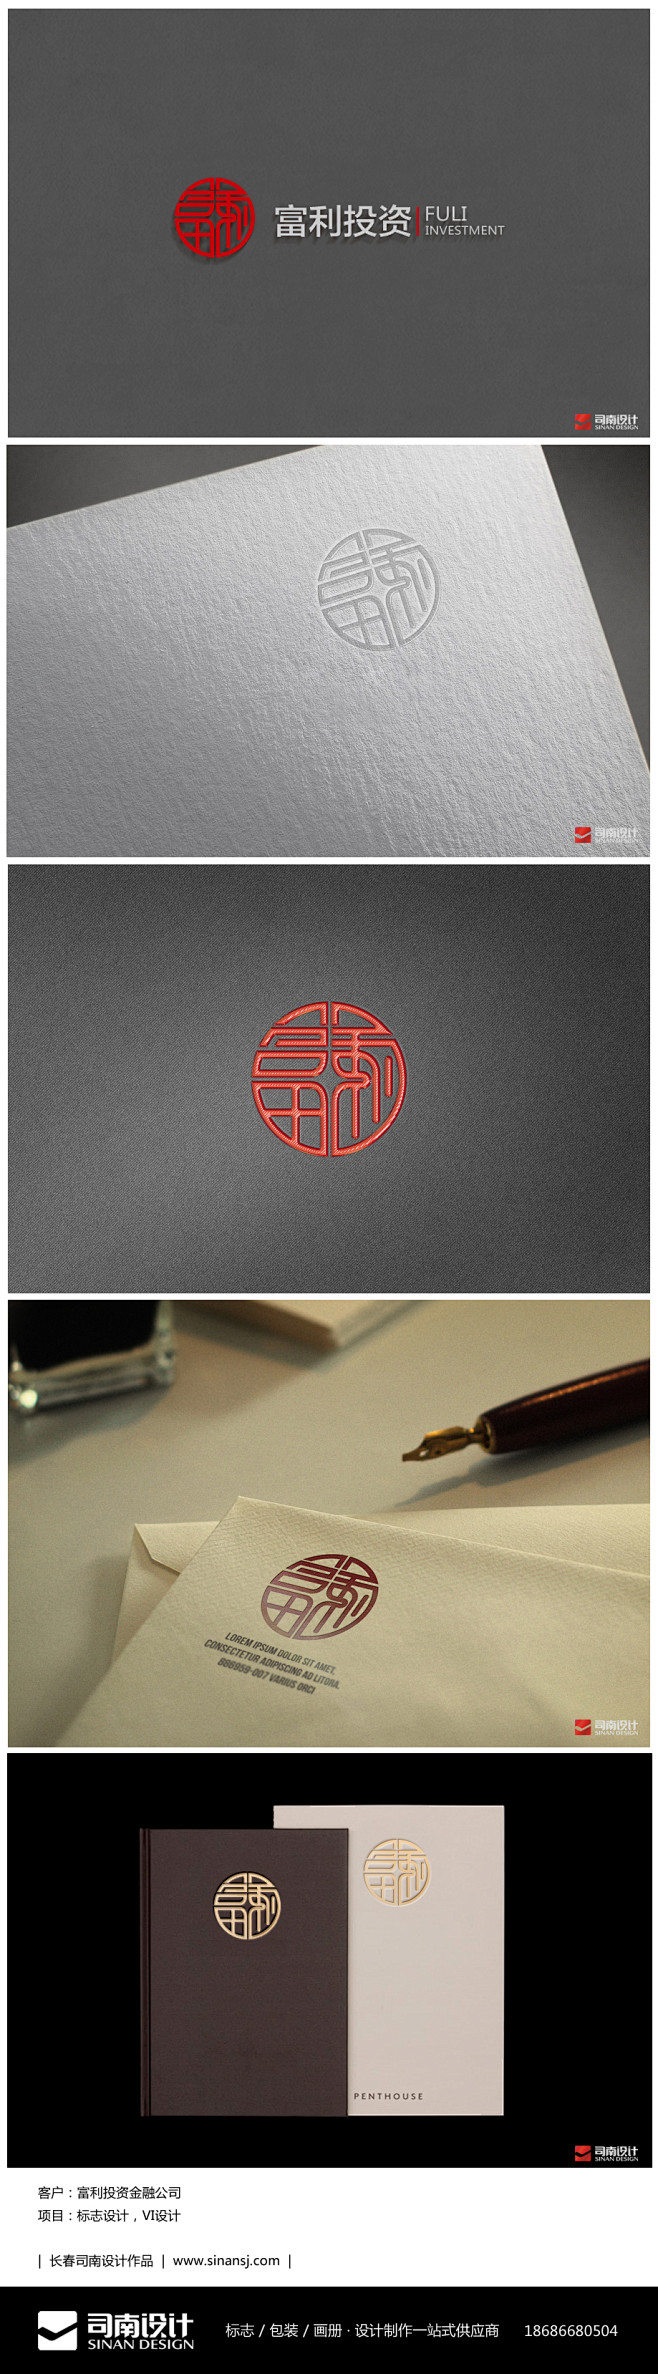 #长春标志设计# #长春logo设计# ...